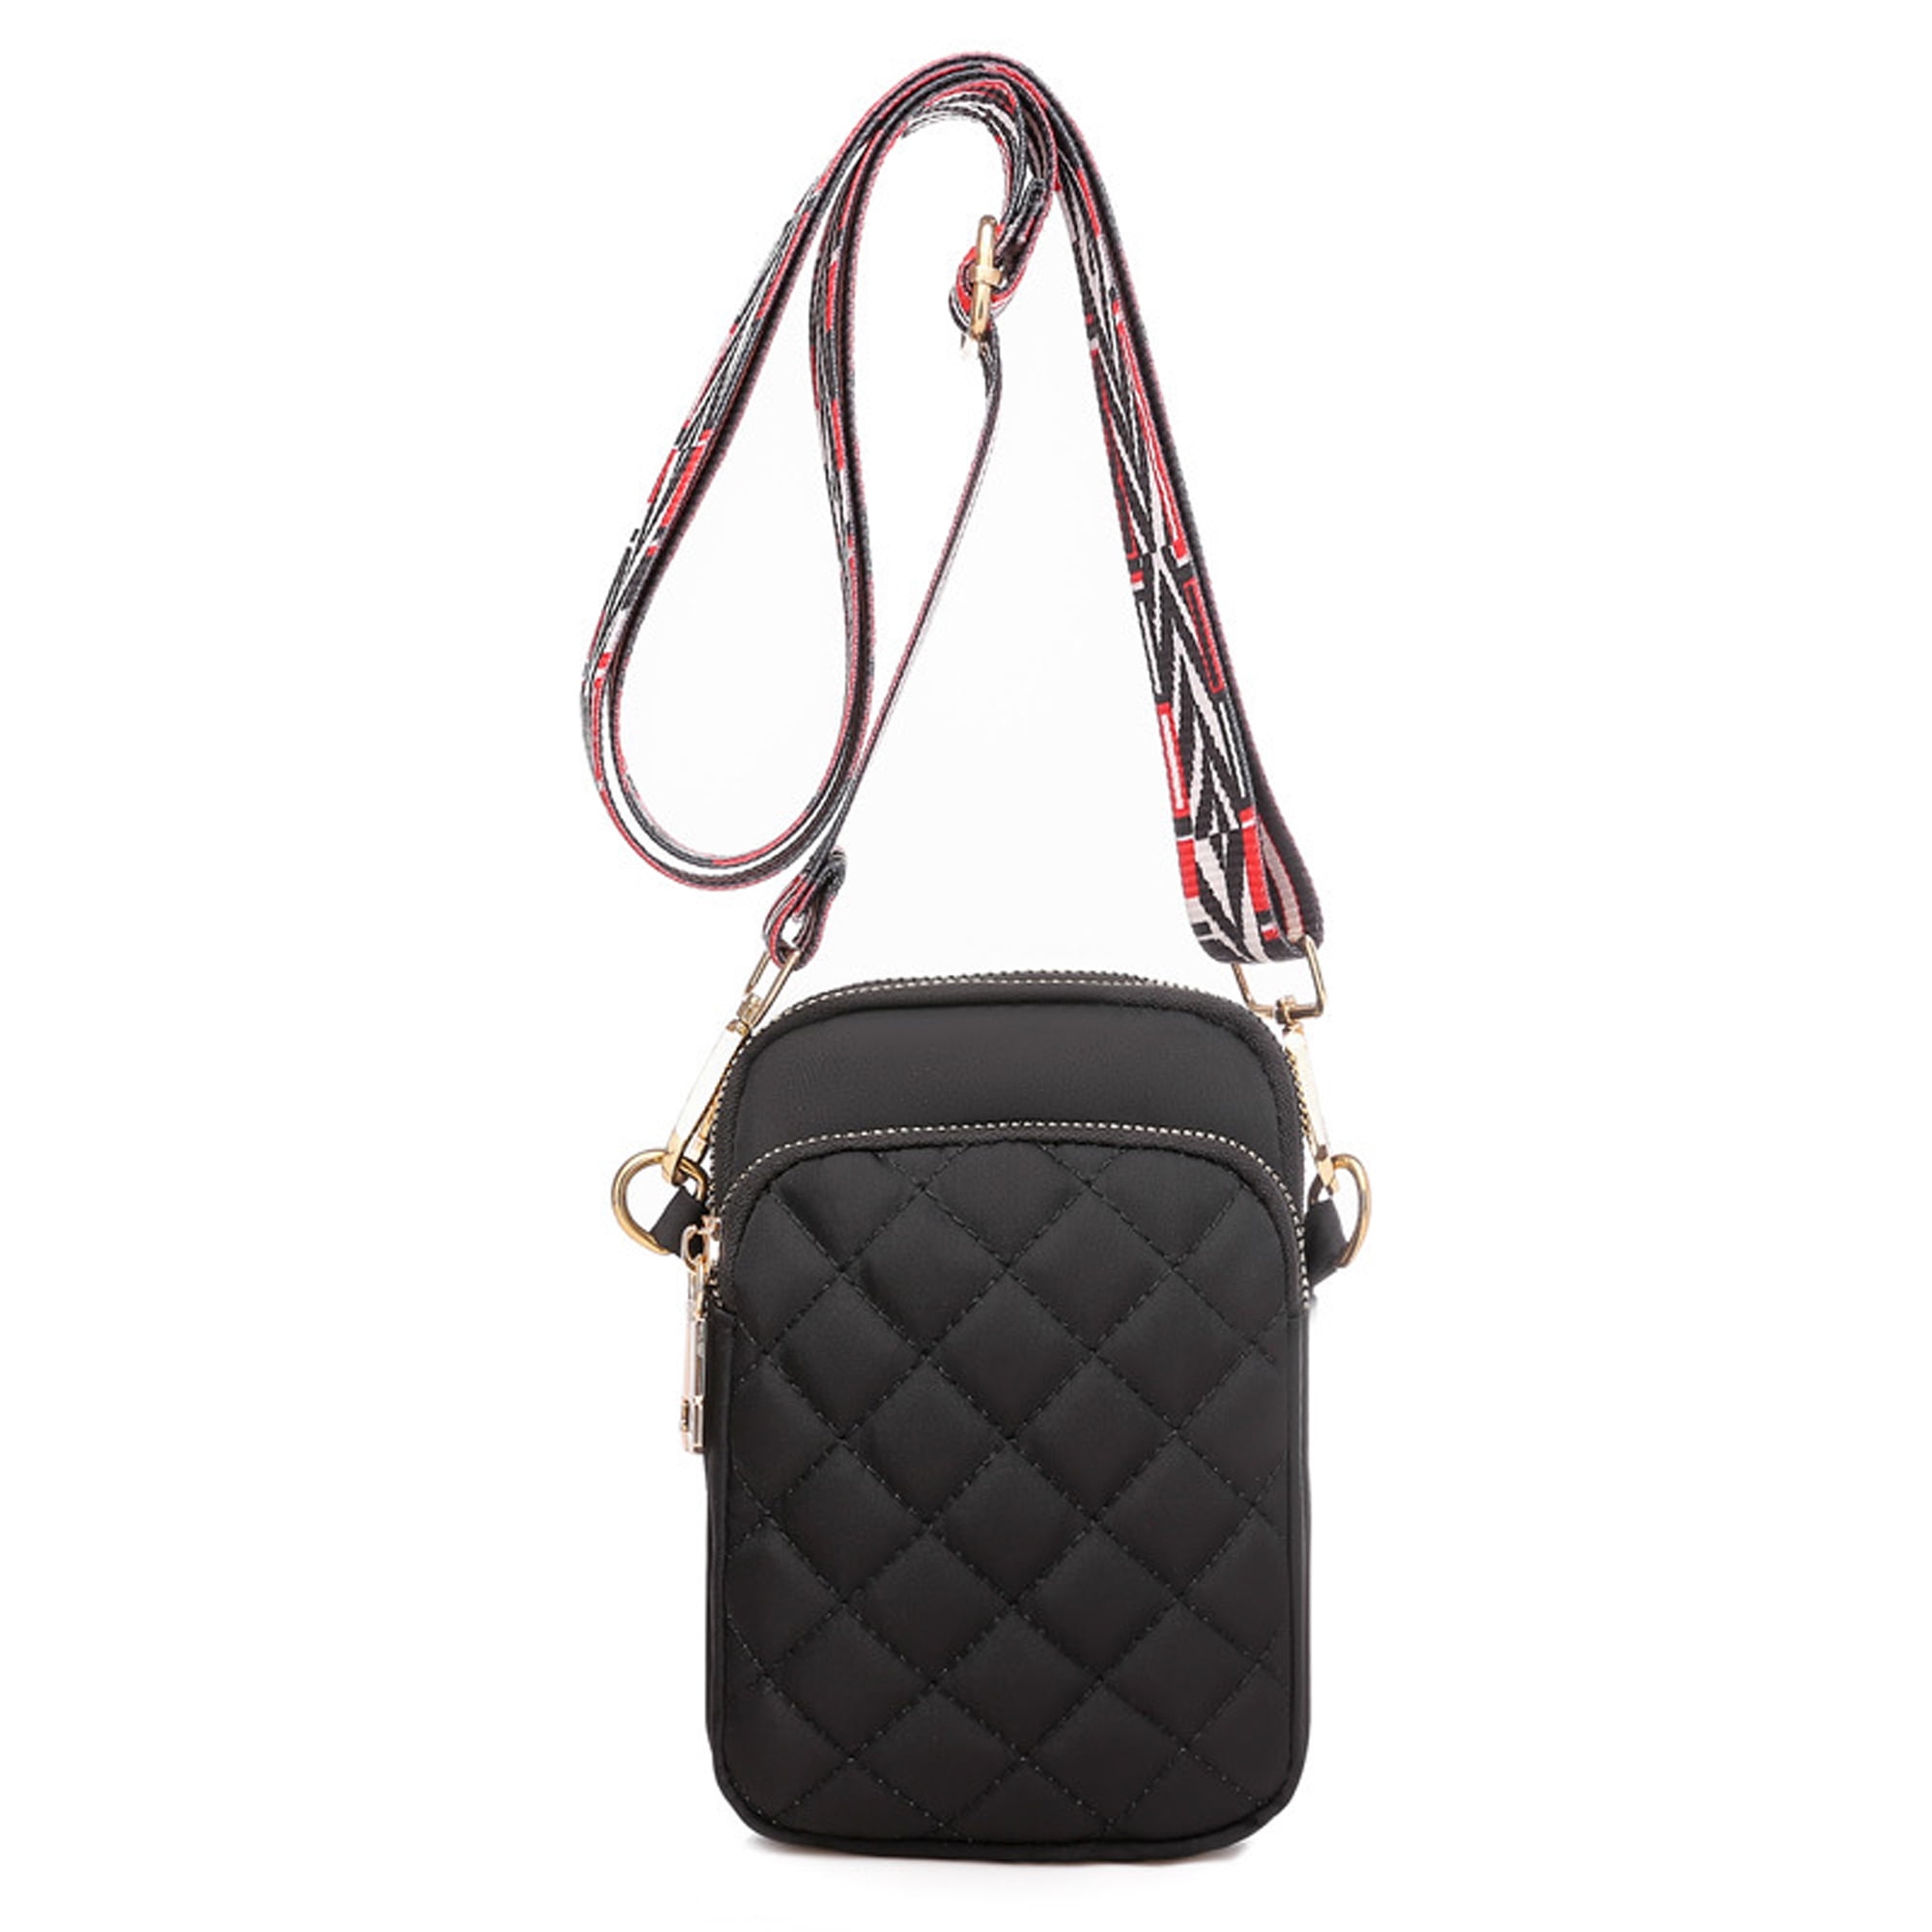 Fashion Women Soft Shoulder Bag Casual Small Handbags Multi-Pocket